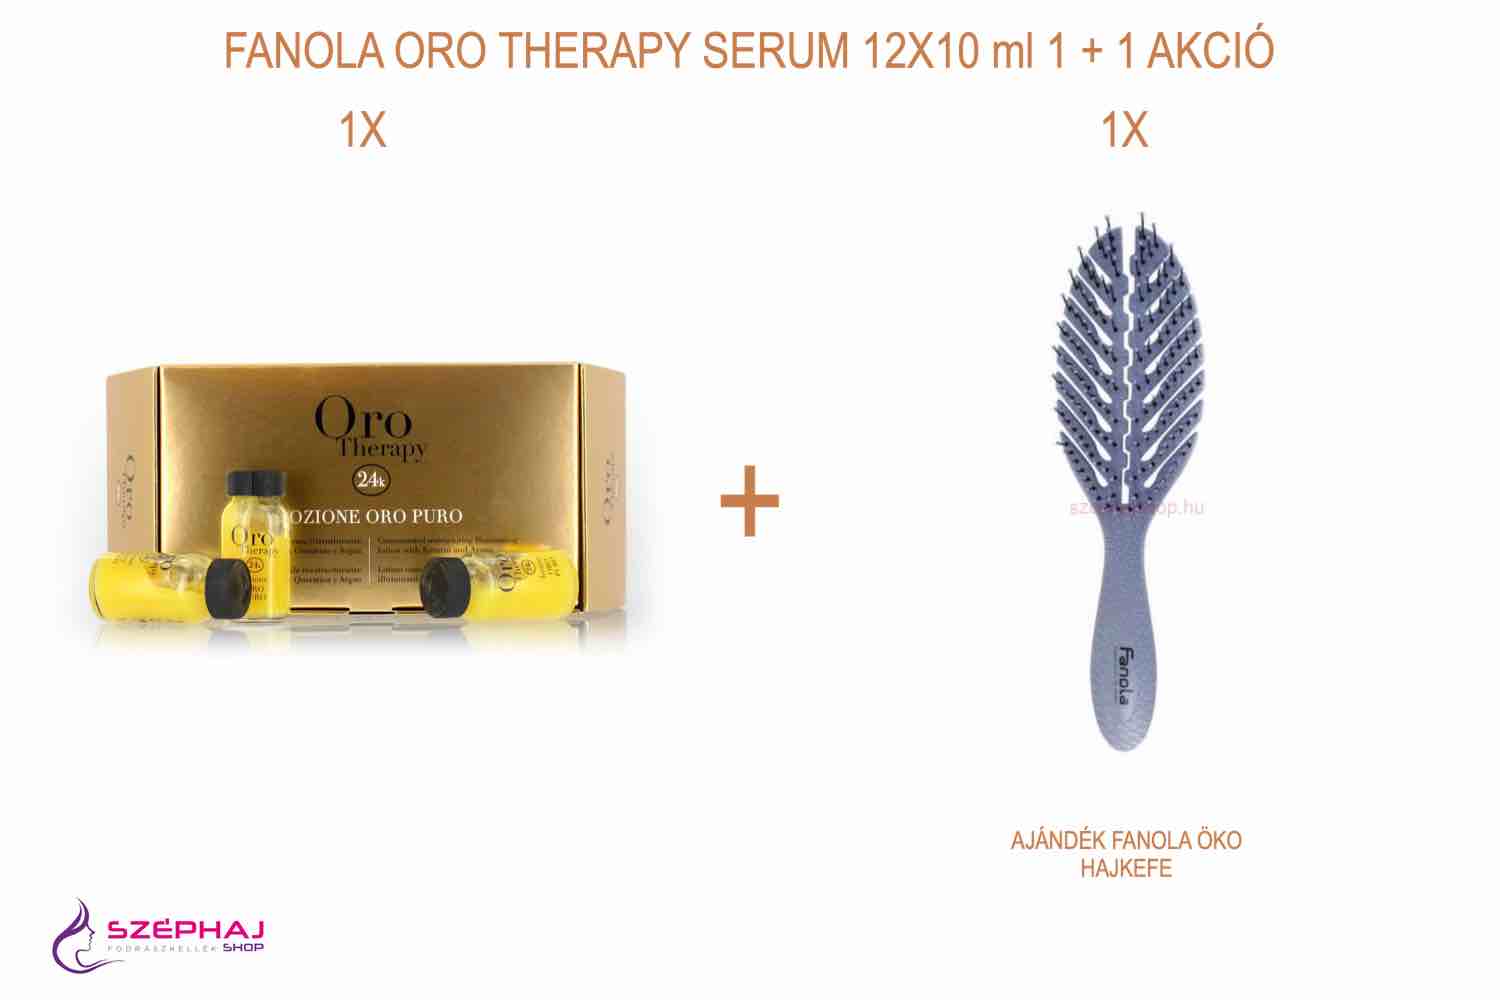 FANOLA ORO Therapy Serum 12x10ml 1 + 1 AKCIÓ